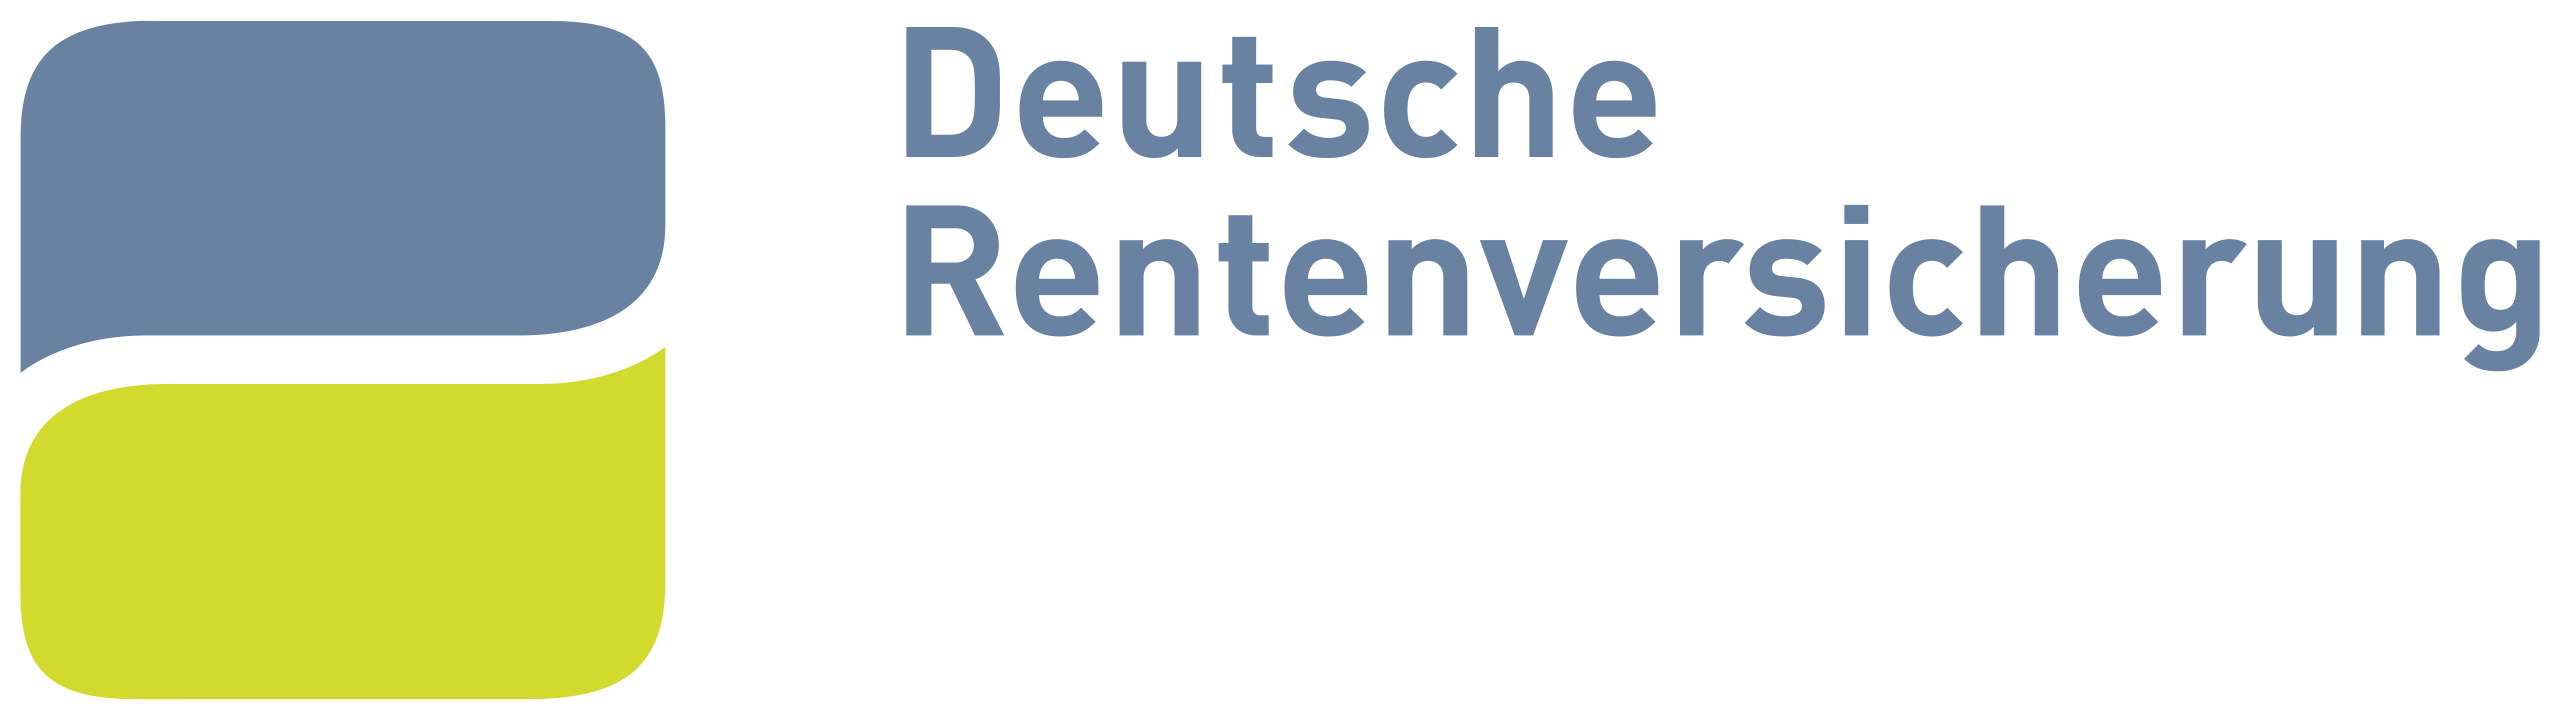 Deutsche_Rentenversicherung.svg